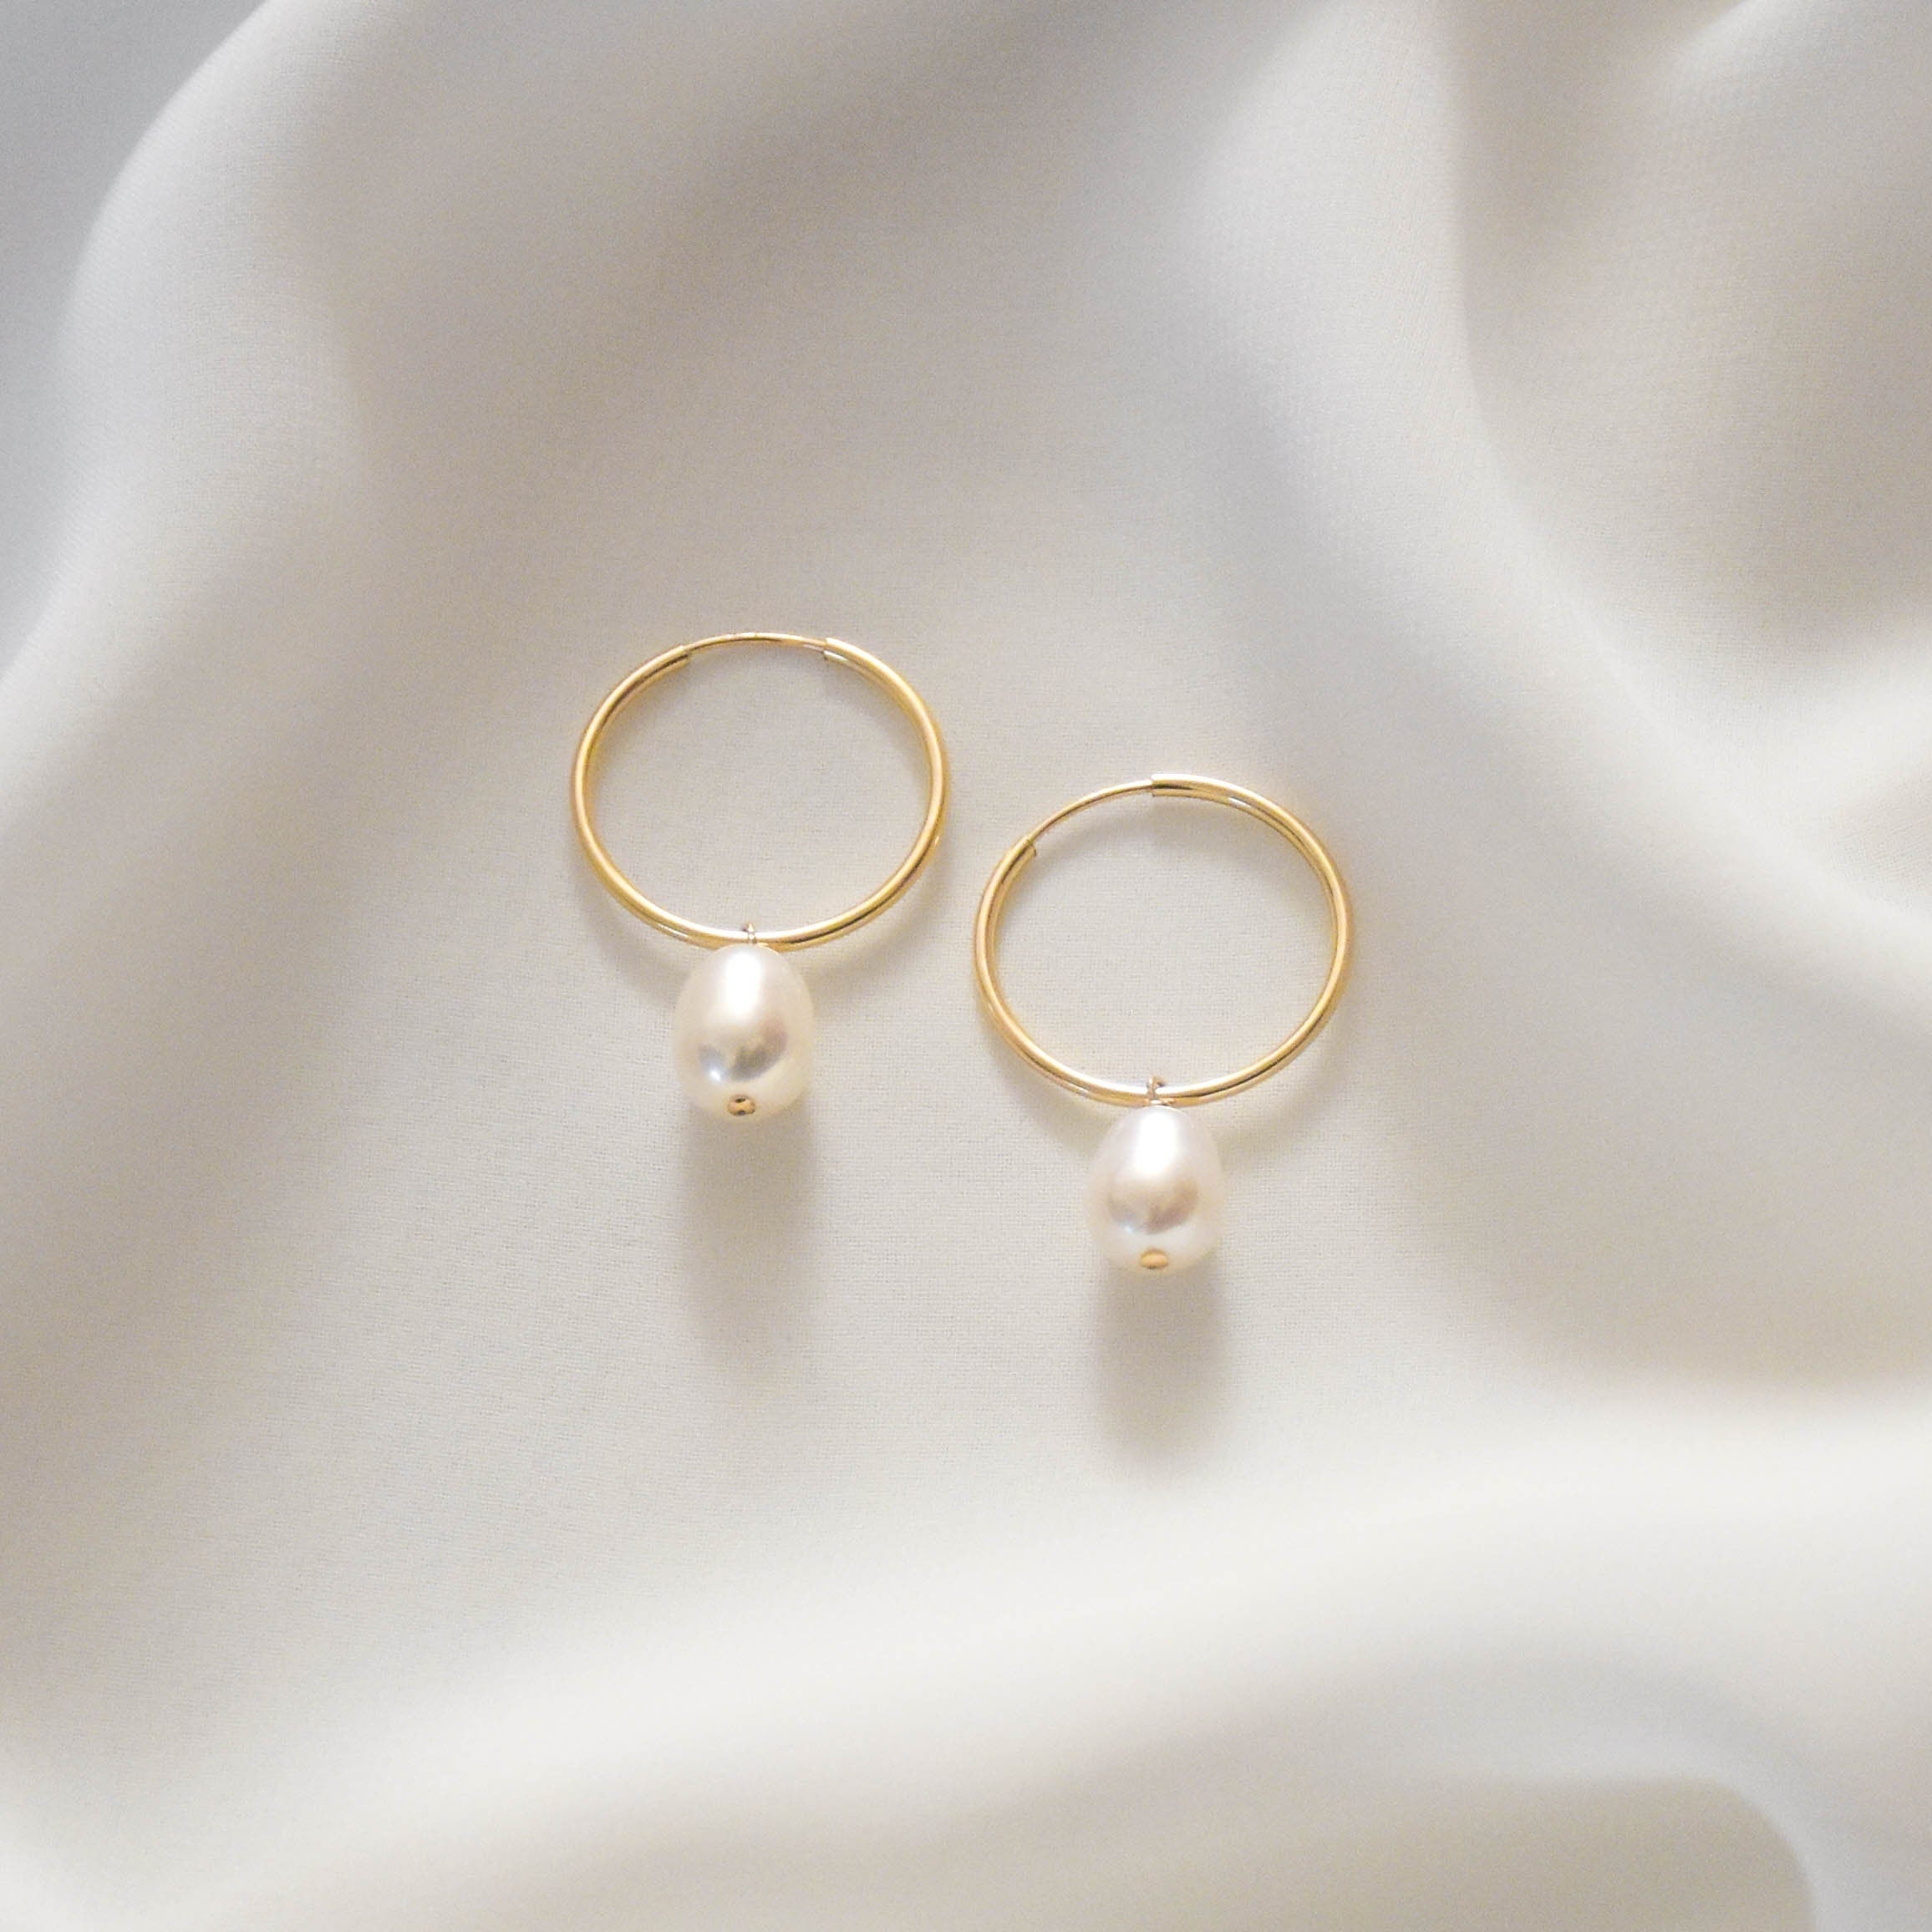 Medium Pearl Hoop Earrings - Baroque Pearl Earrings, Gold filled Pearl Hoop Earrings, Gold filled hoop earrings, Pearl Hoops |GFE00043